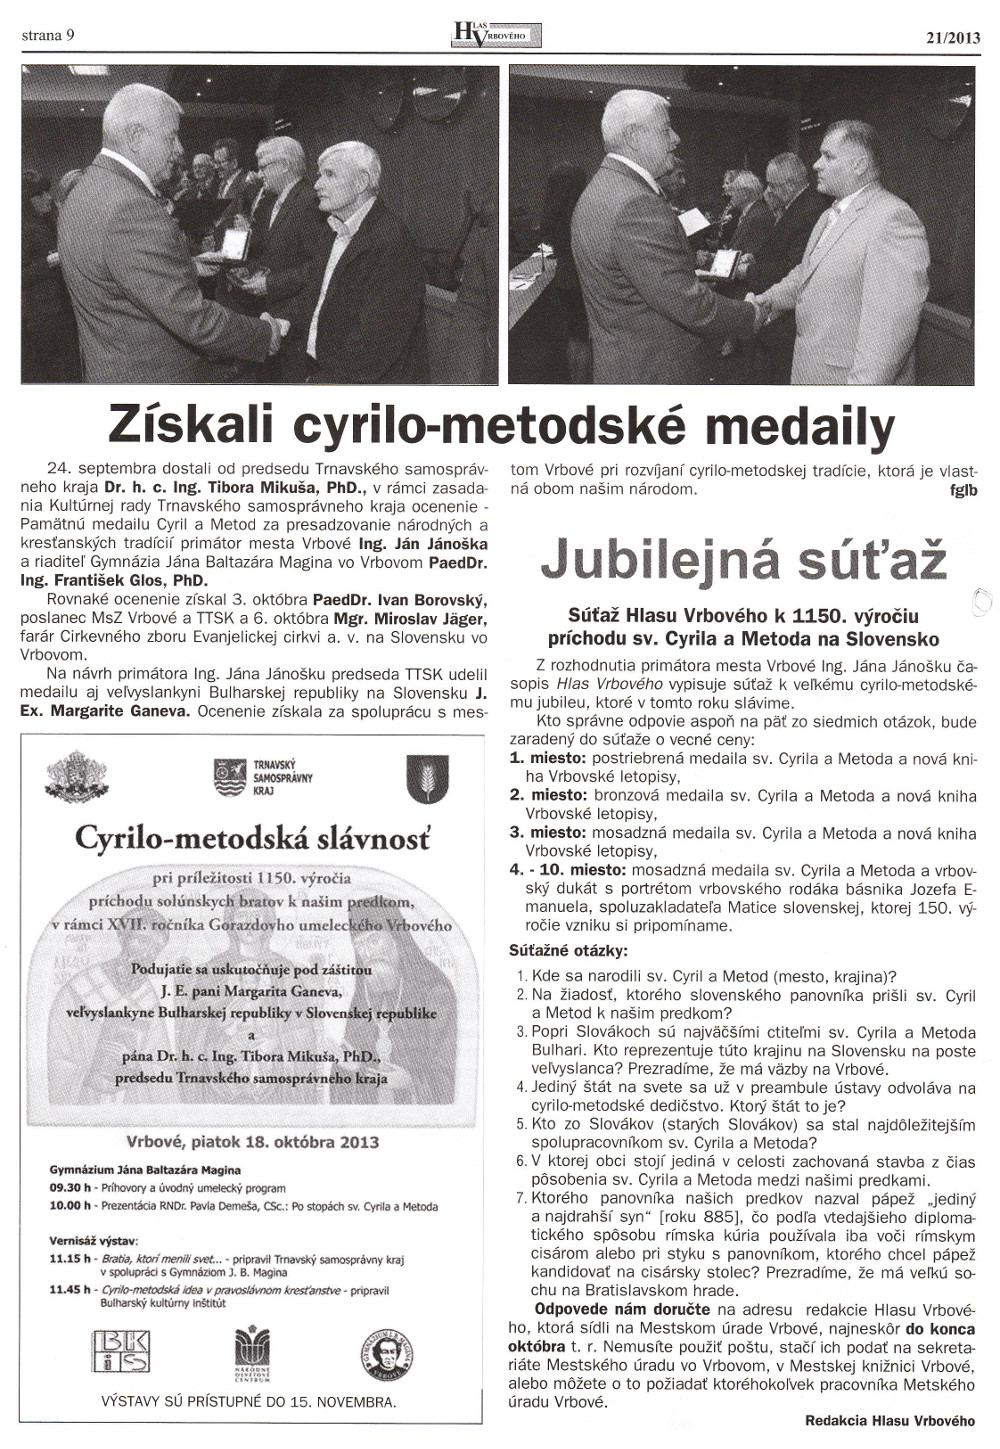 Hlas Vrbového 21/2013, strana 9